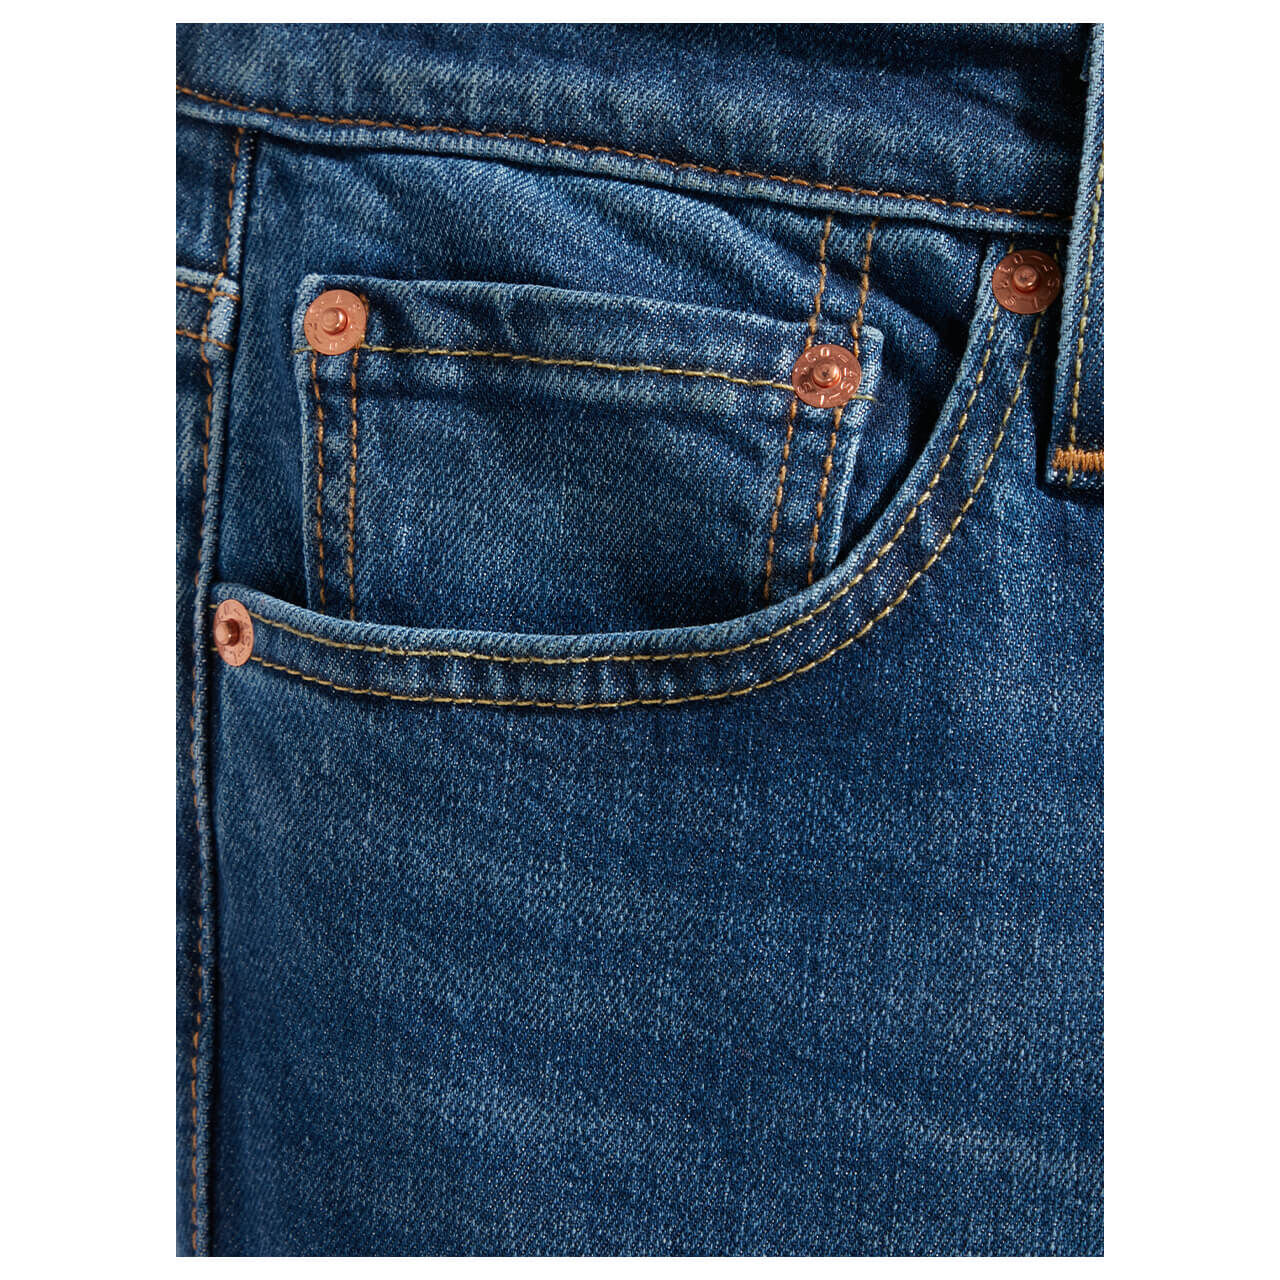 Levi's Jeans 511 für Herren in Blau verwaschen, FarbNr.: 5242